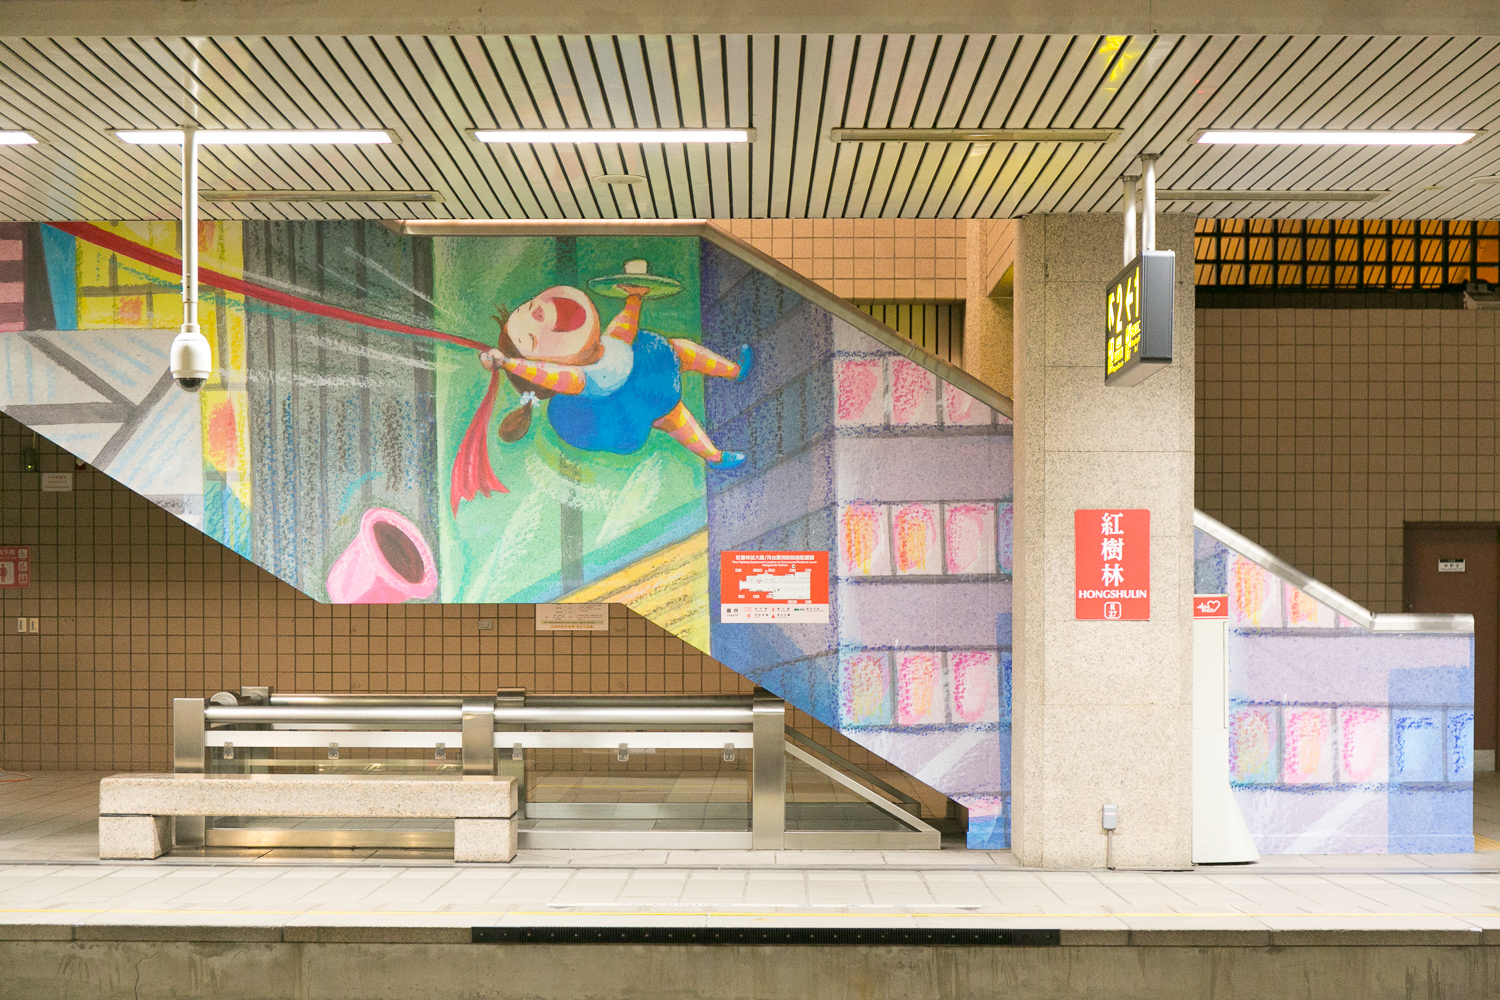 淡海輕軌幾米公共藝術展7月15日至8月31日在捷運紅樹林站開展